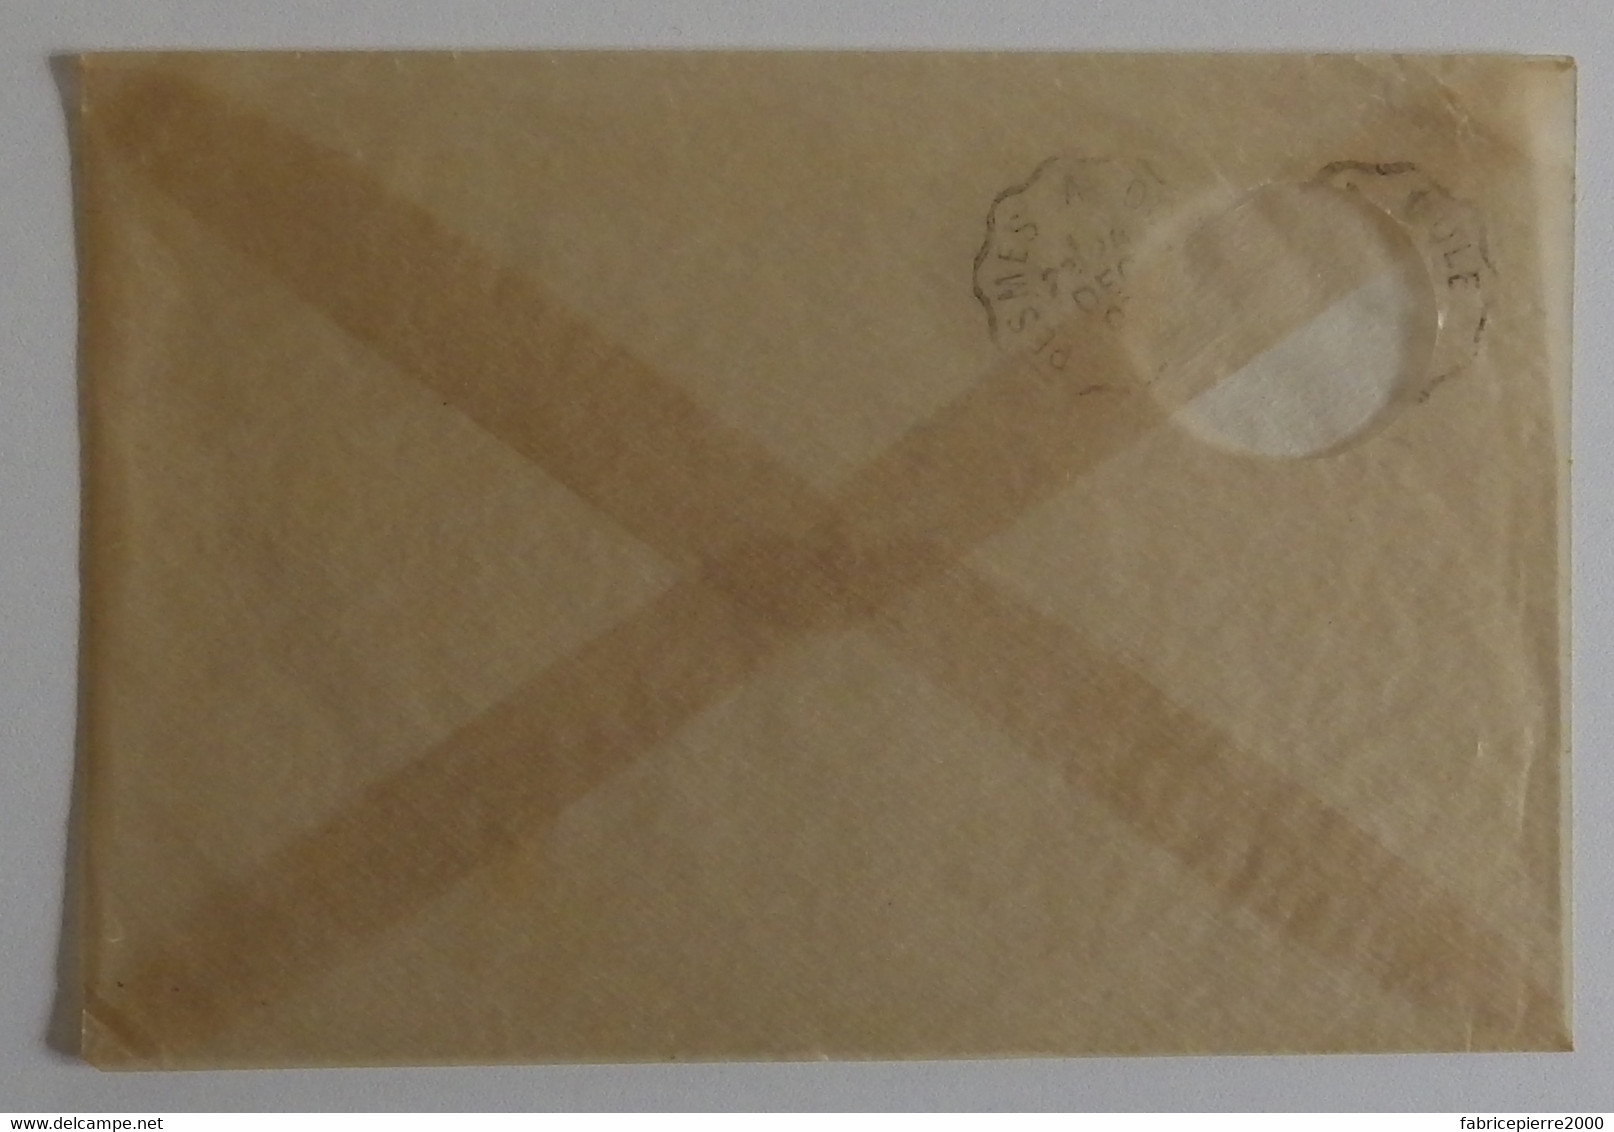 Enveloppe Mica à Fenêtre Pochette à Cartes Postales 1907 TBE Pesmes Dôle - Taschine